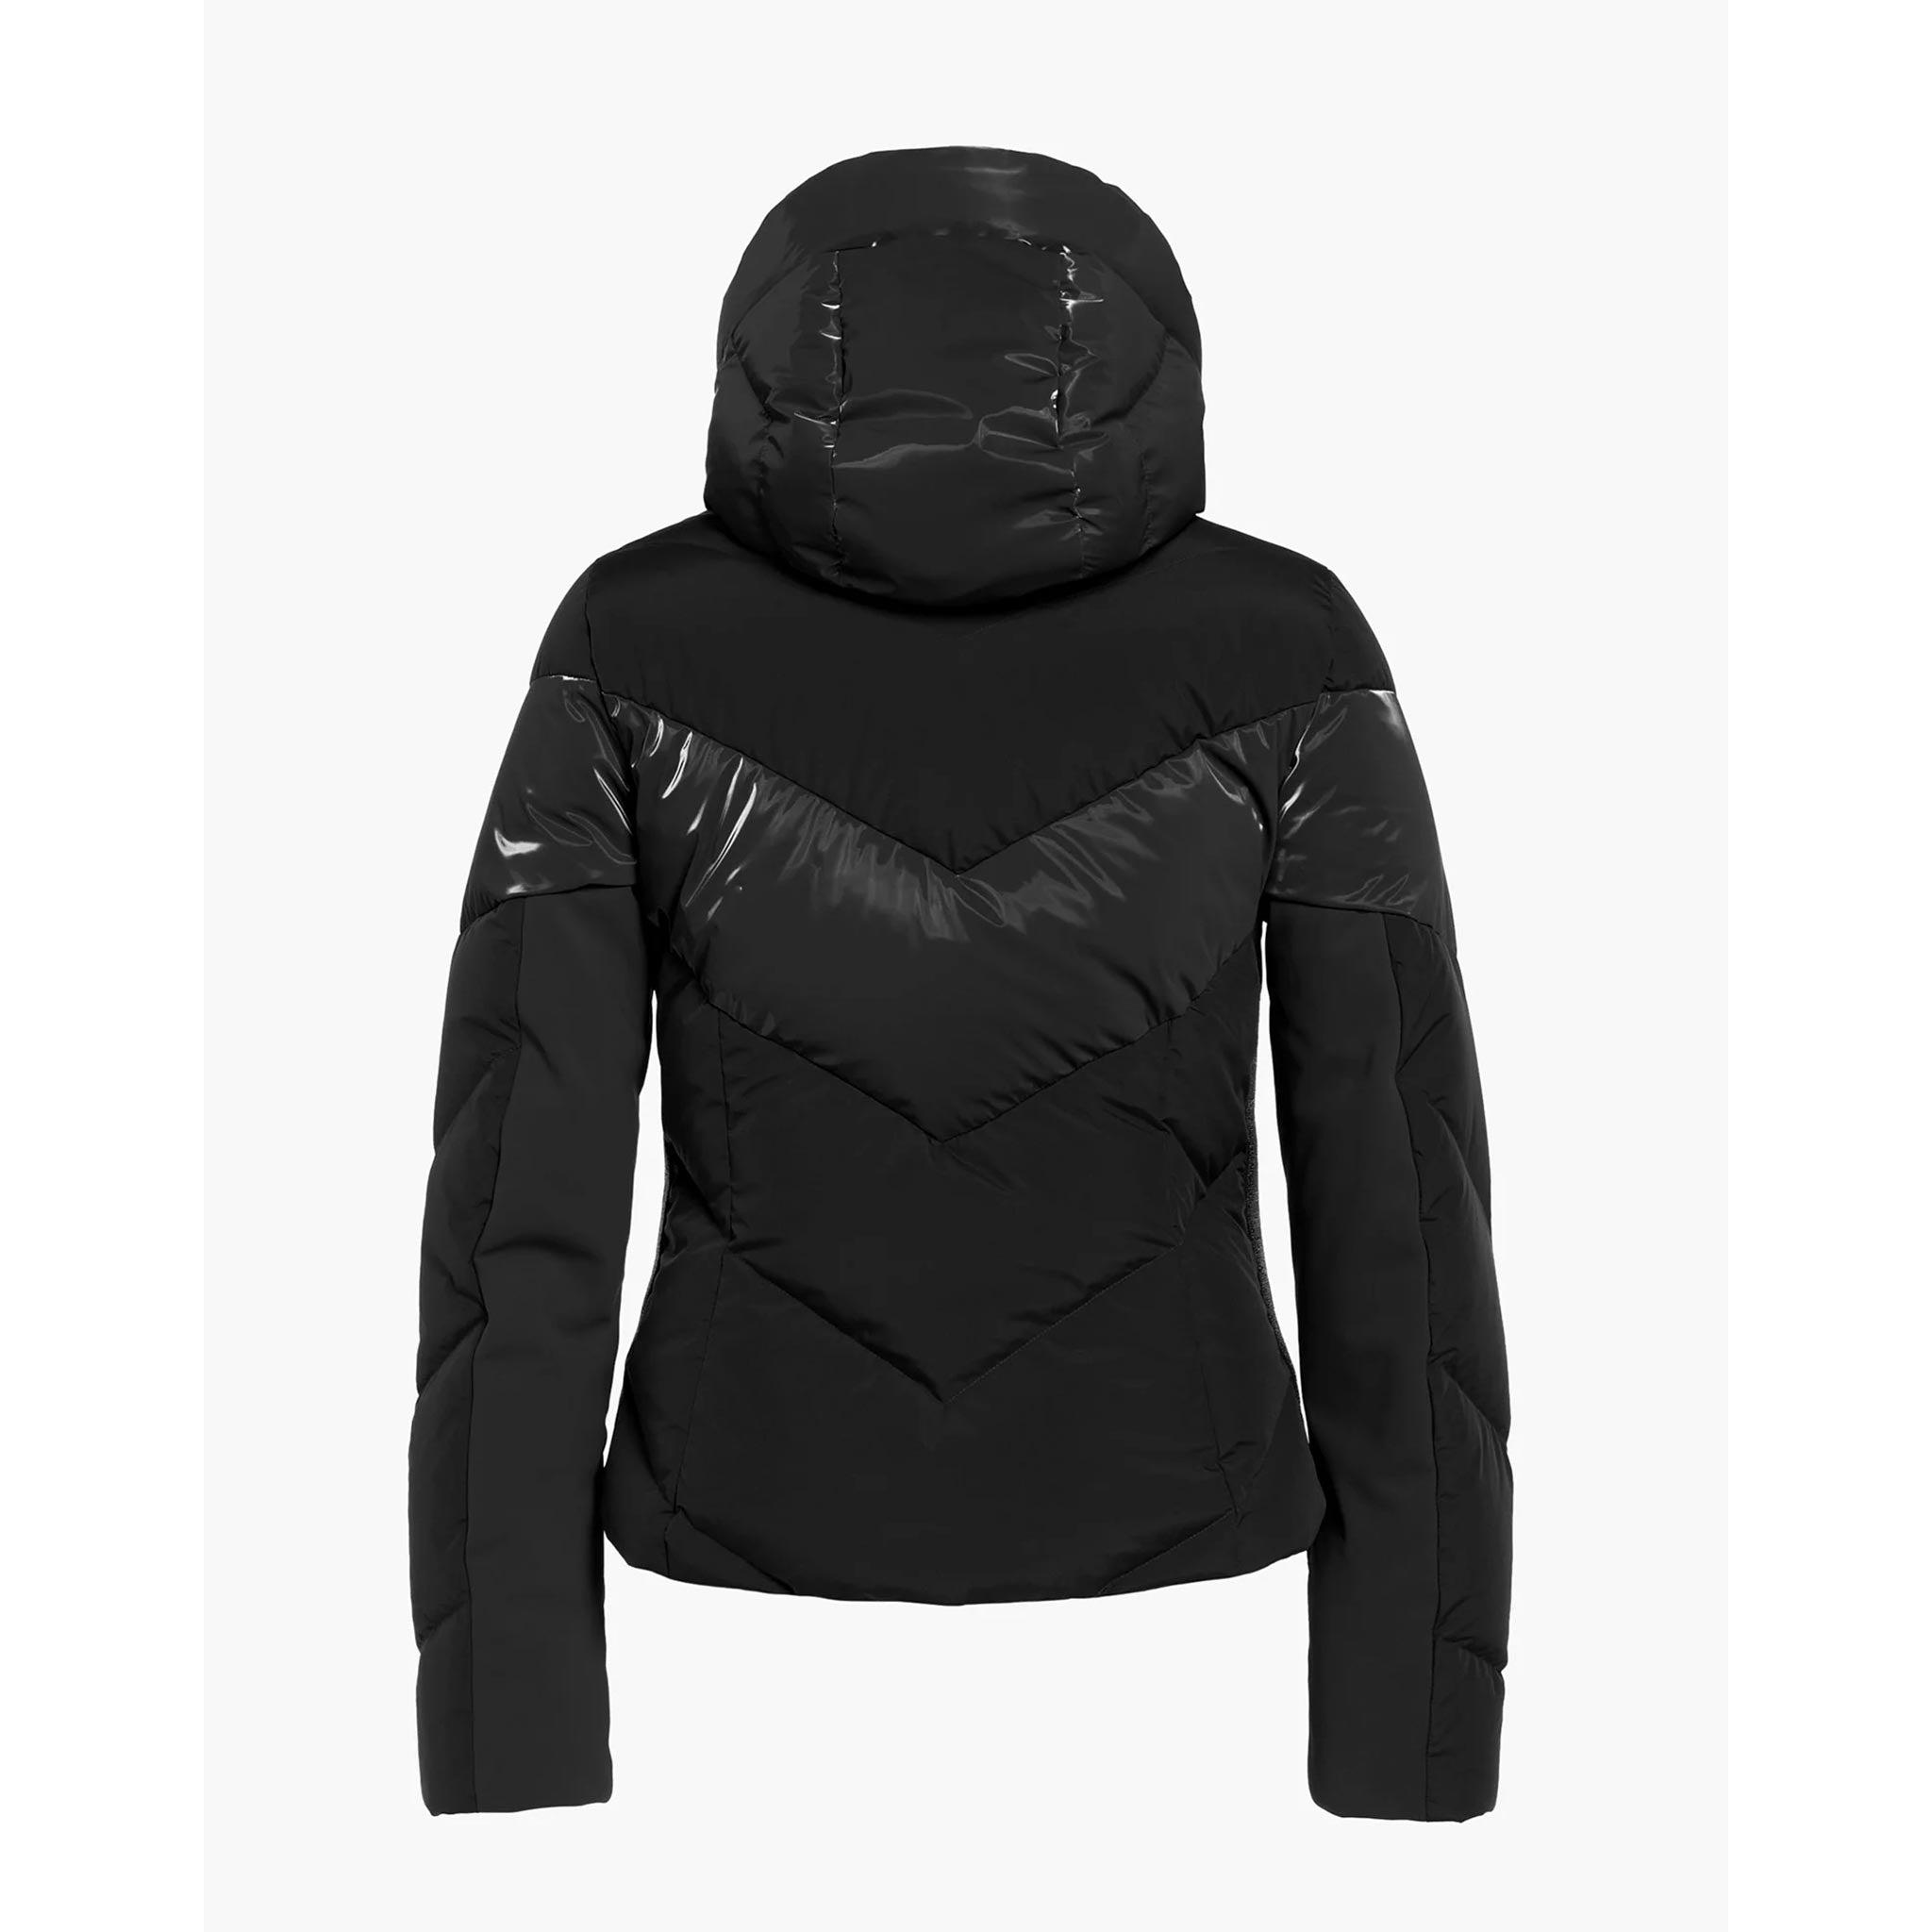 Moraine Ski Jacket in Black